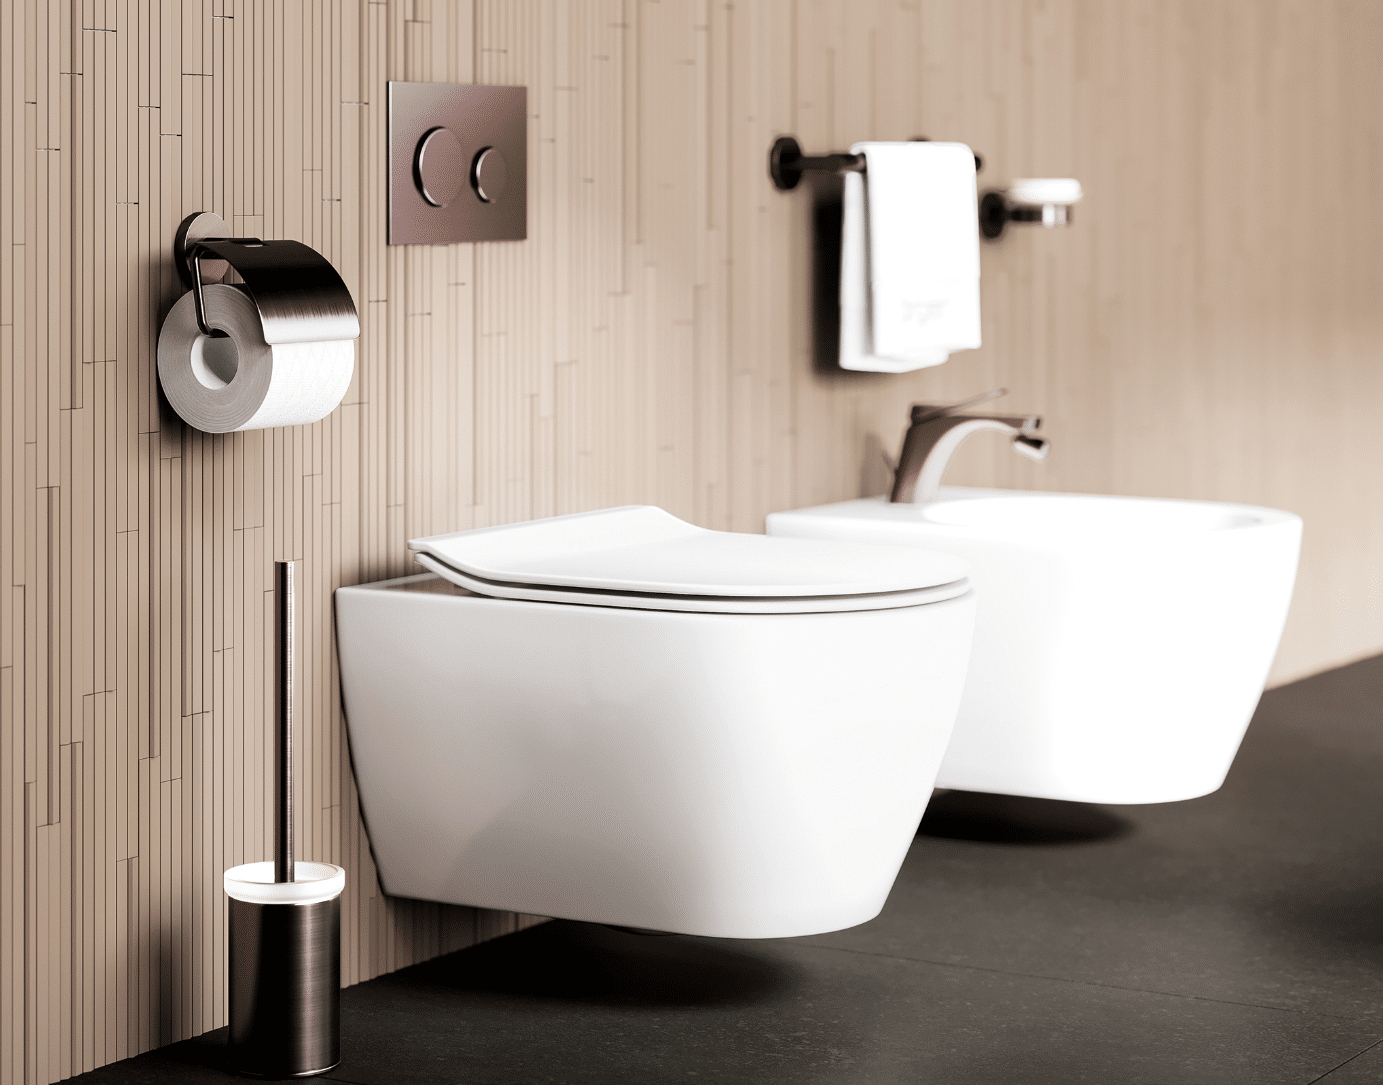 „Eleven“ in Nerz matt ist ein absoluter Hingucker auch im WC-Bereich. Stimmig veredelt zeigen sich Bidet-Batterie, Accessoires und WC-Betätigungsplatte. Perfekt dazu das Hänge-WC und Bidet in mattem Weiß aus der Kollektion „Moon“ von Scarabeo.